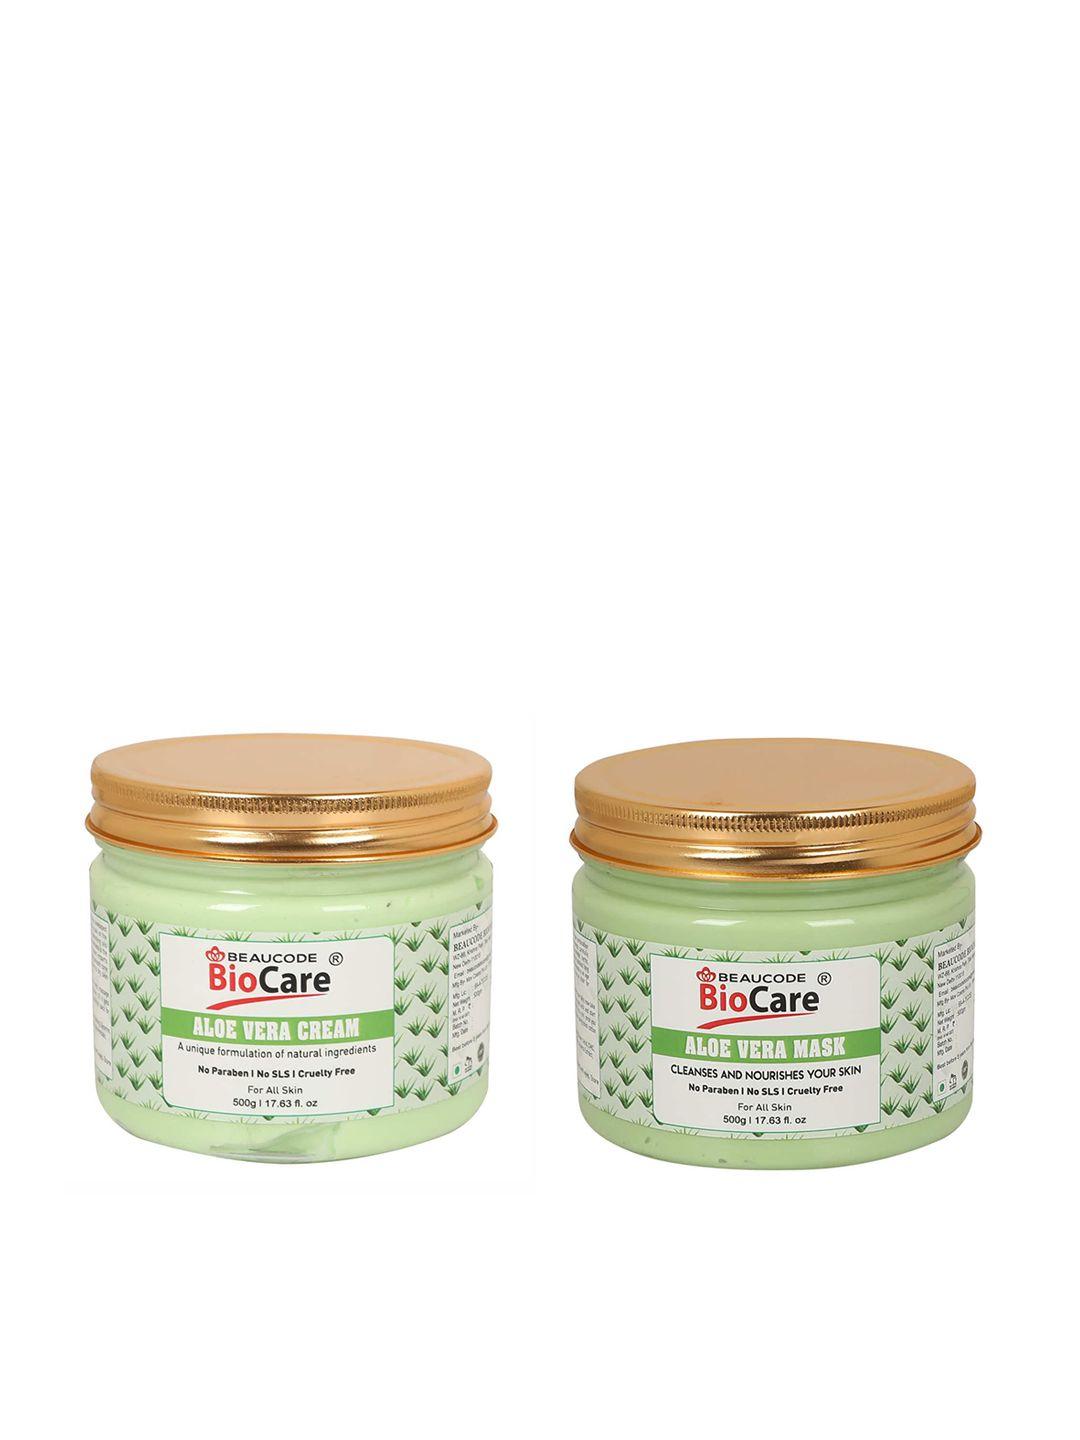 beaucode biocare set of aloe vera cream & mask - 500 g each